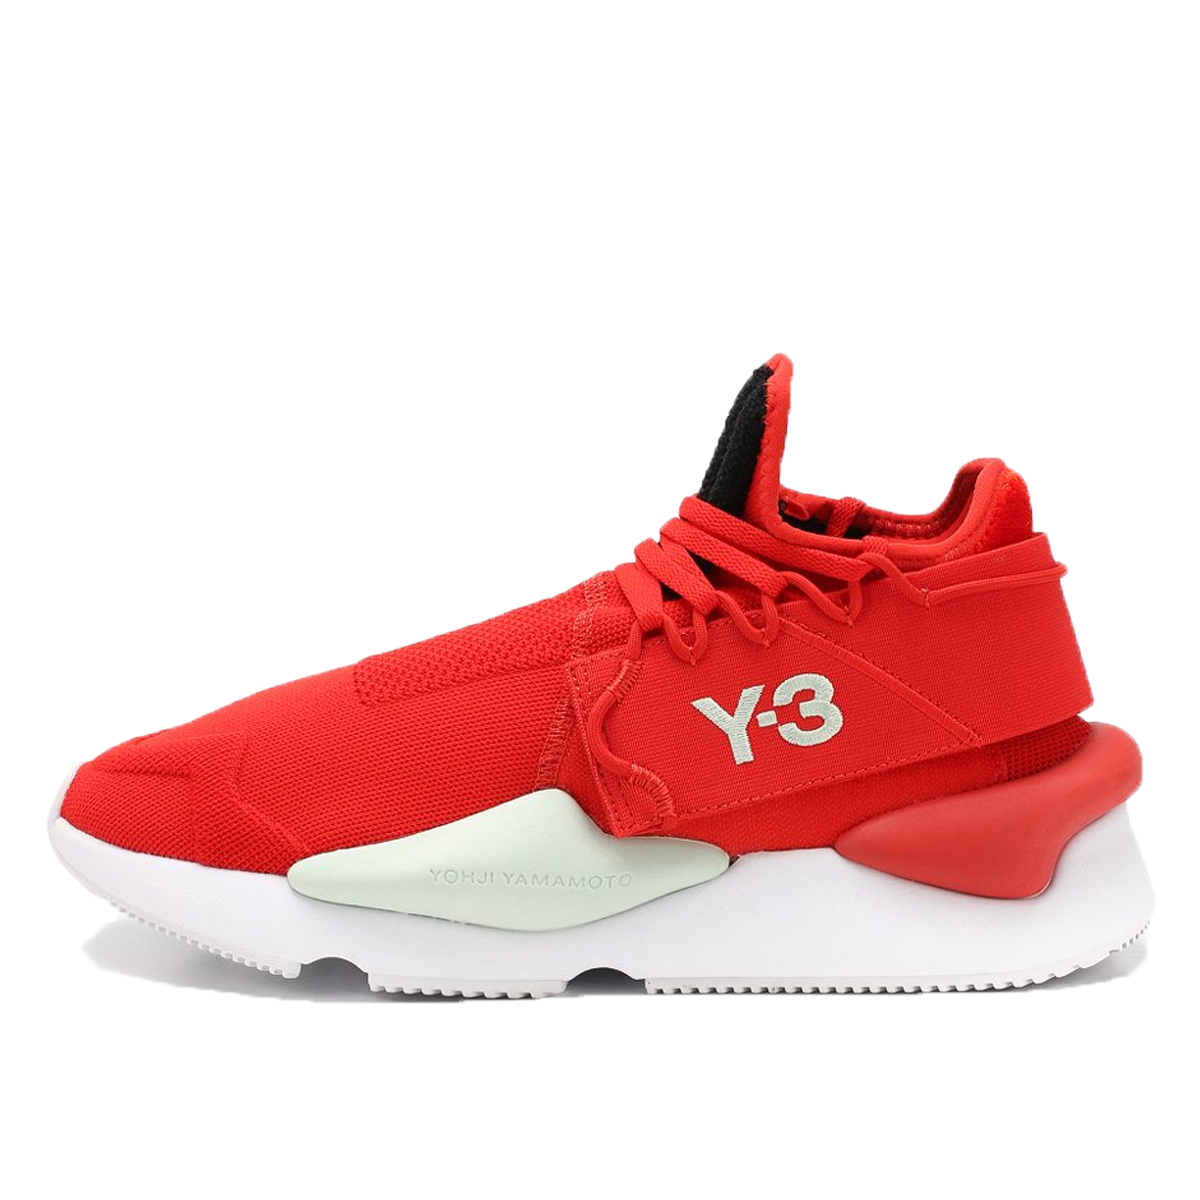 Adidas Y-3 Kaiwa Knit Red (2019) | F97420 - KLEKT